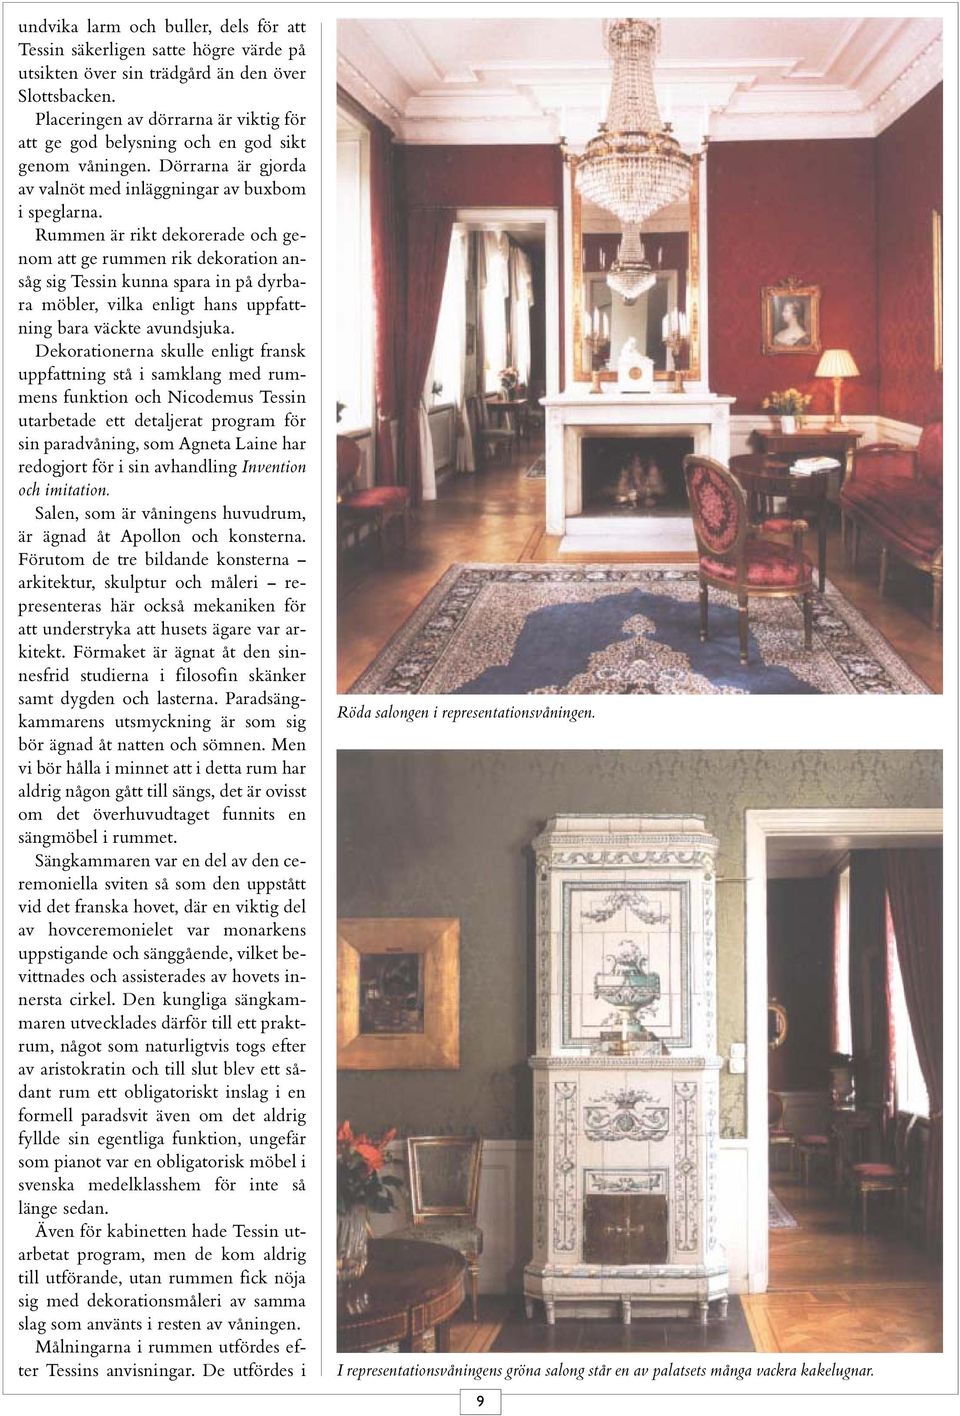 Rummen är rikt dekorerade och genom att ge rummen rik dekoration ansåg sig Tessin kunna spara in på dyrbara möbler, vilka enligt hans uppfattning bara väckte avundsjuka.